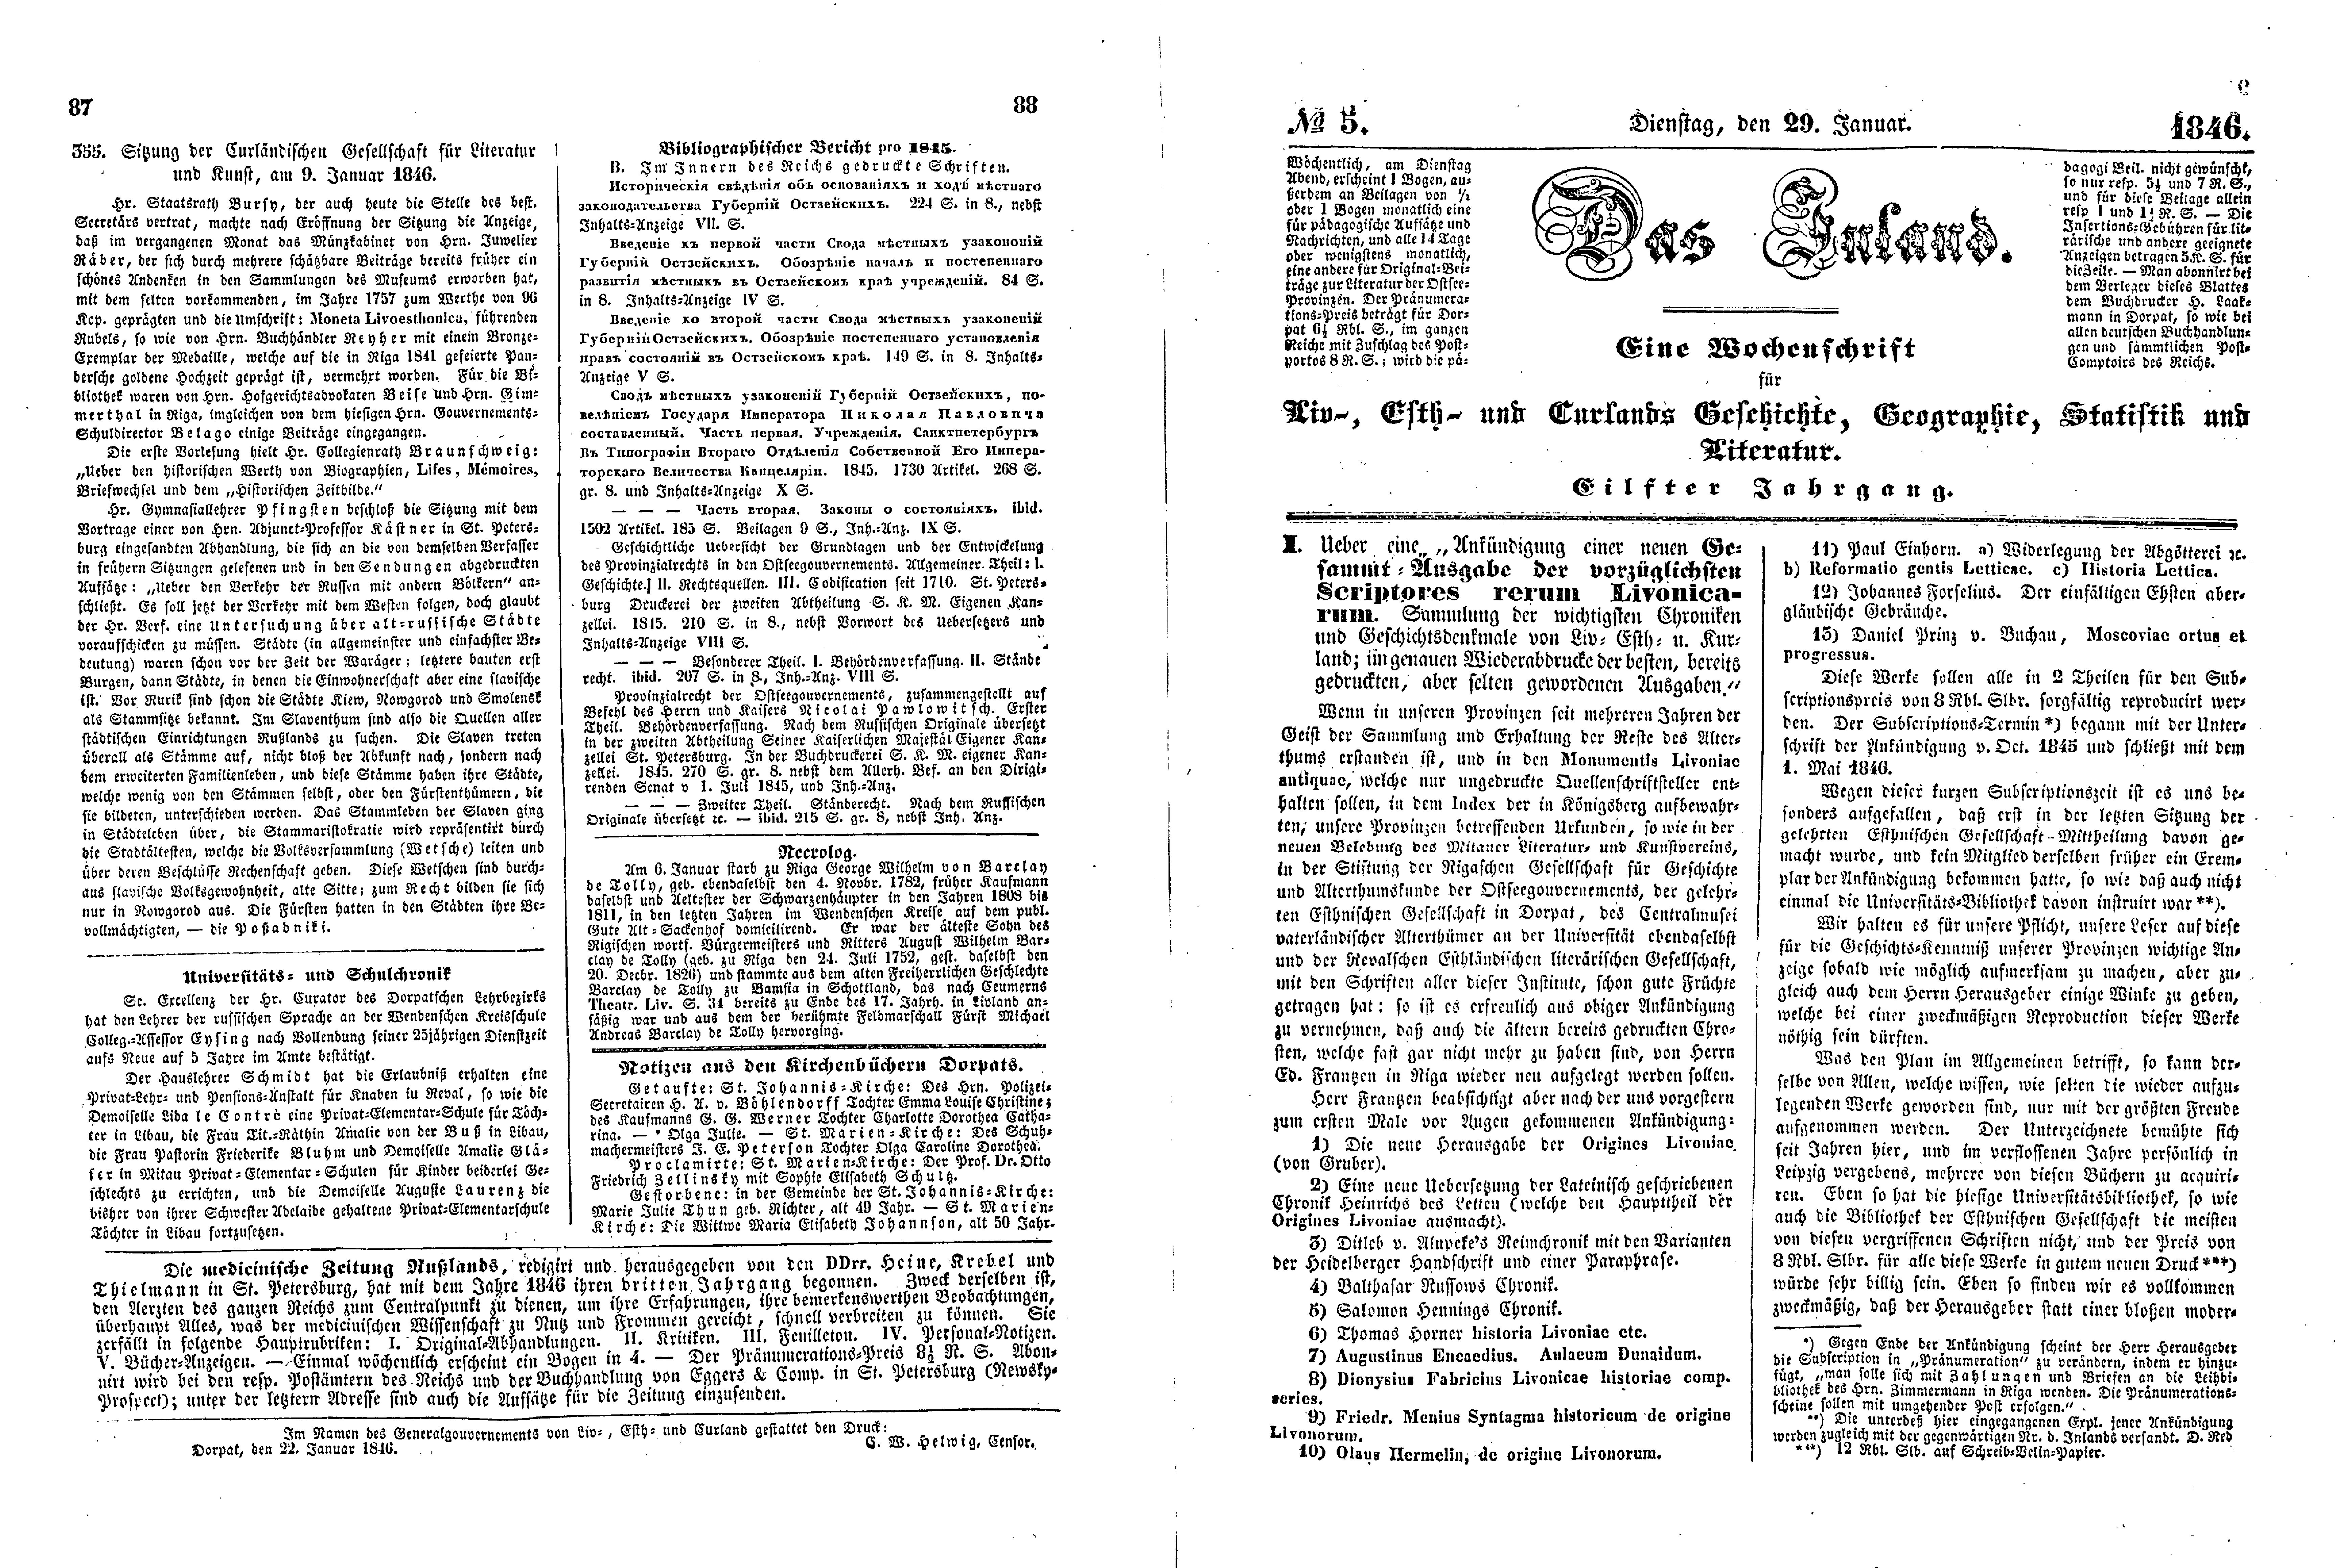 Das Inland [11] (1846) | 27. (87-90) Основной текст